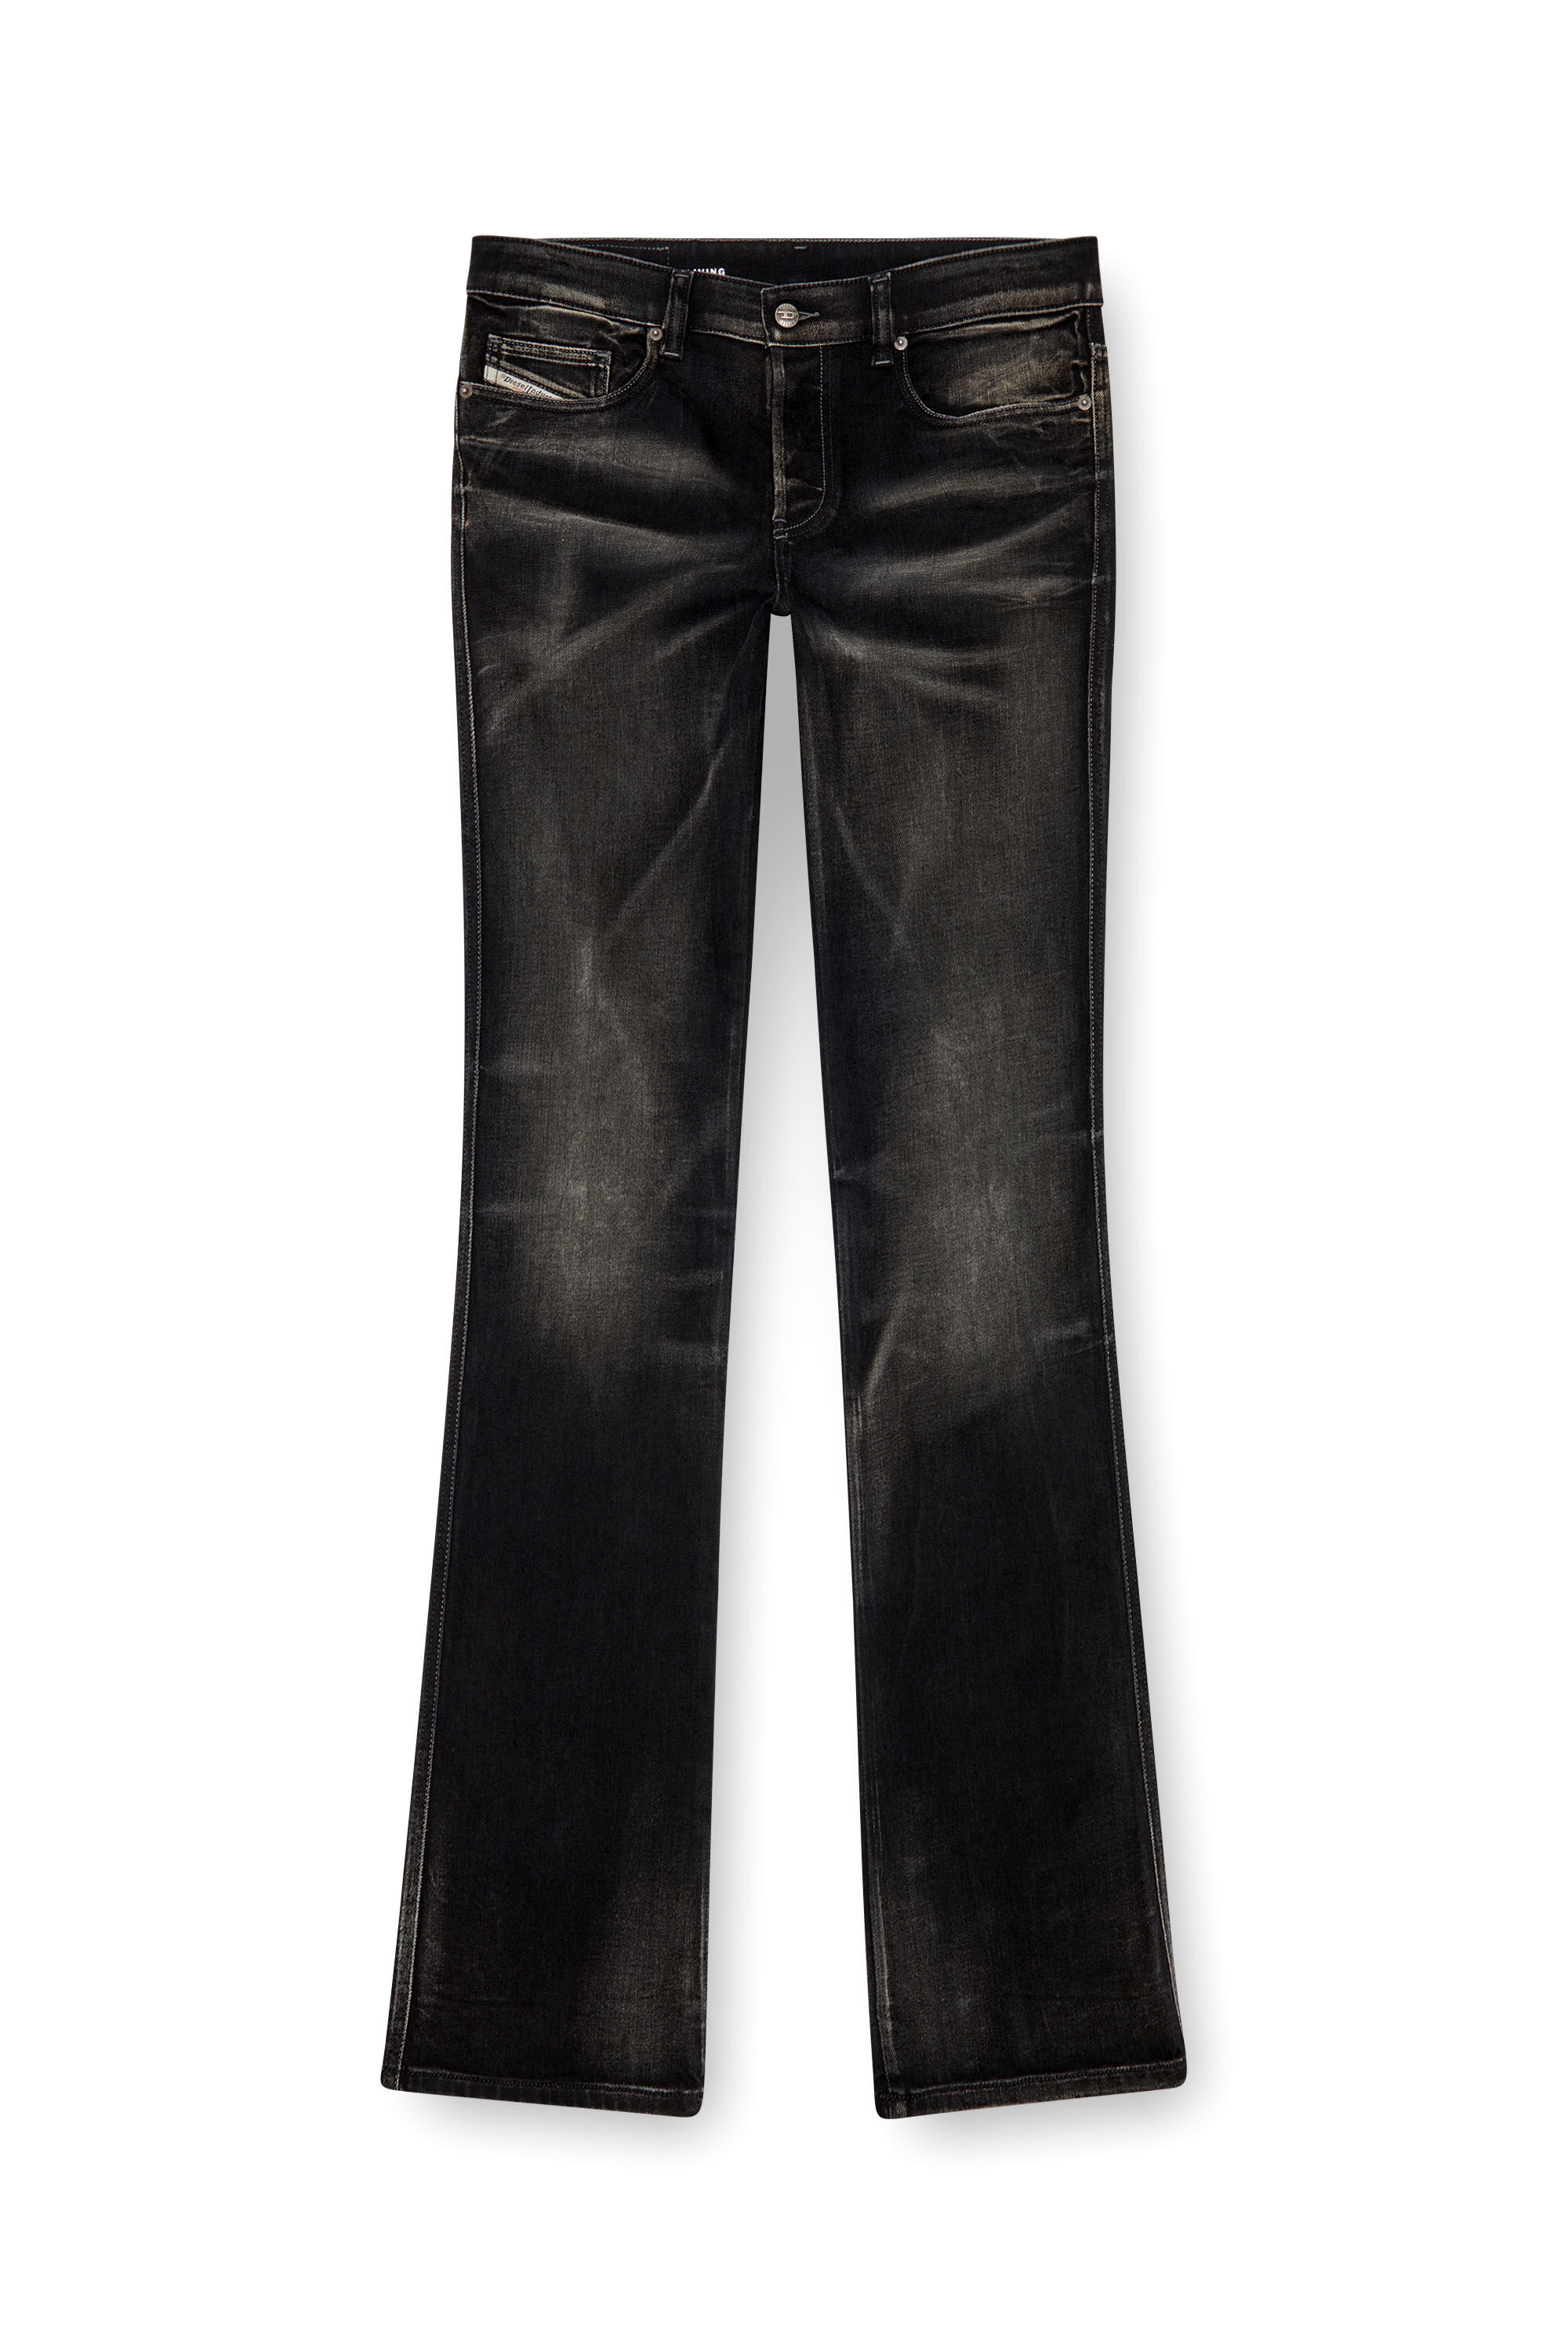 Diesel - Man Bootcut Jeans 1998 D-Buck 09J53, Black/Dark grey - Image 2